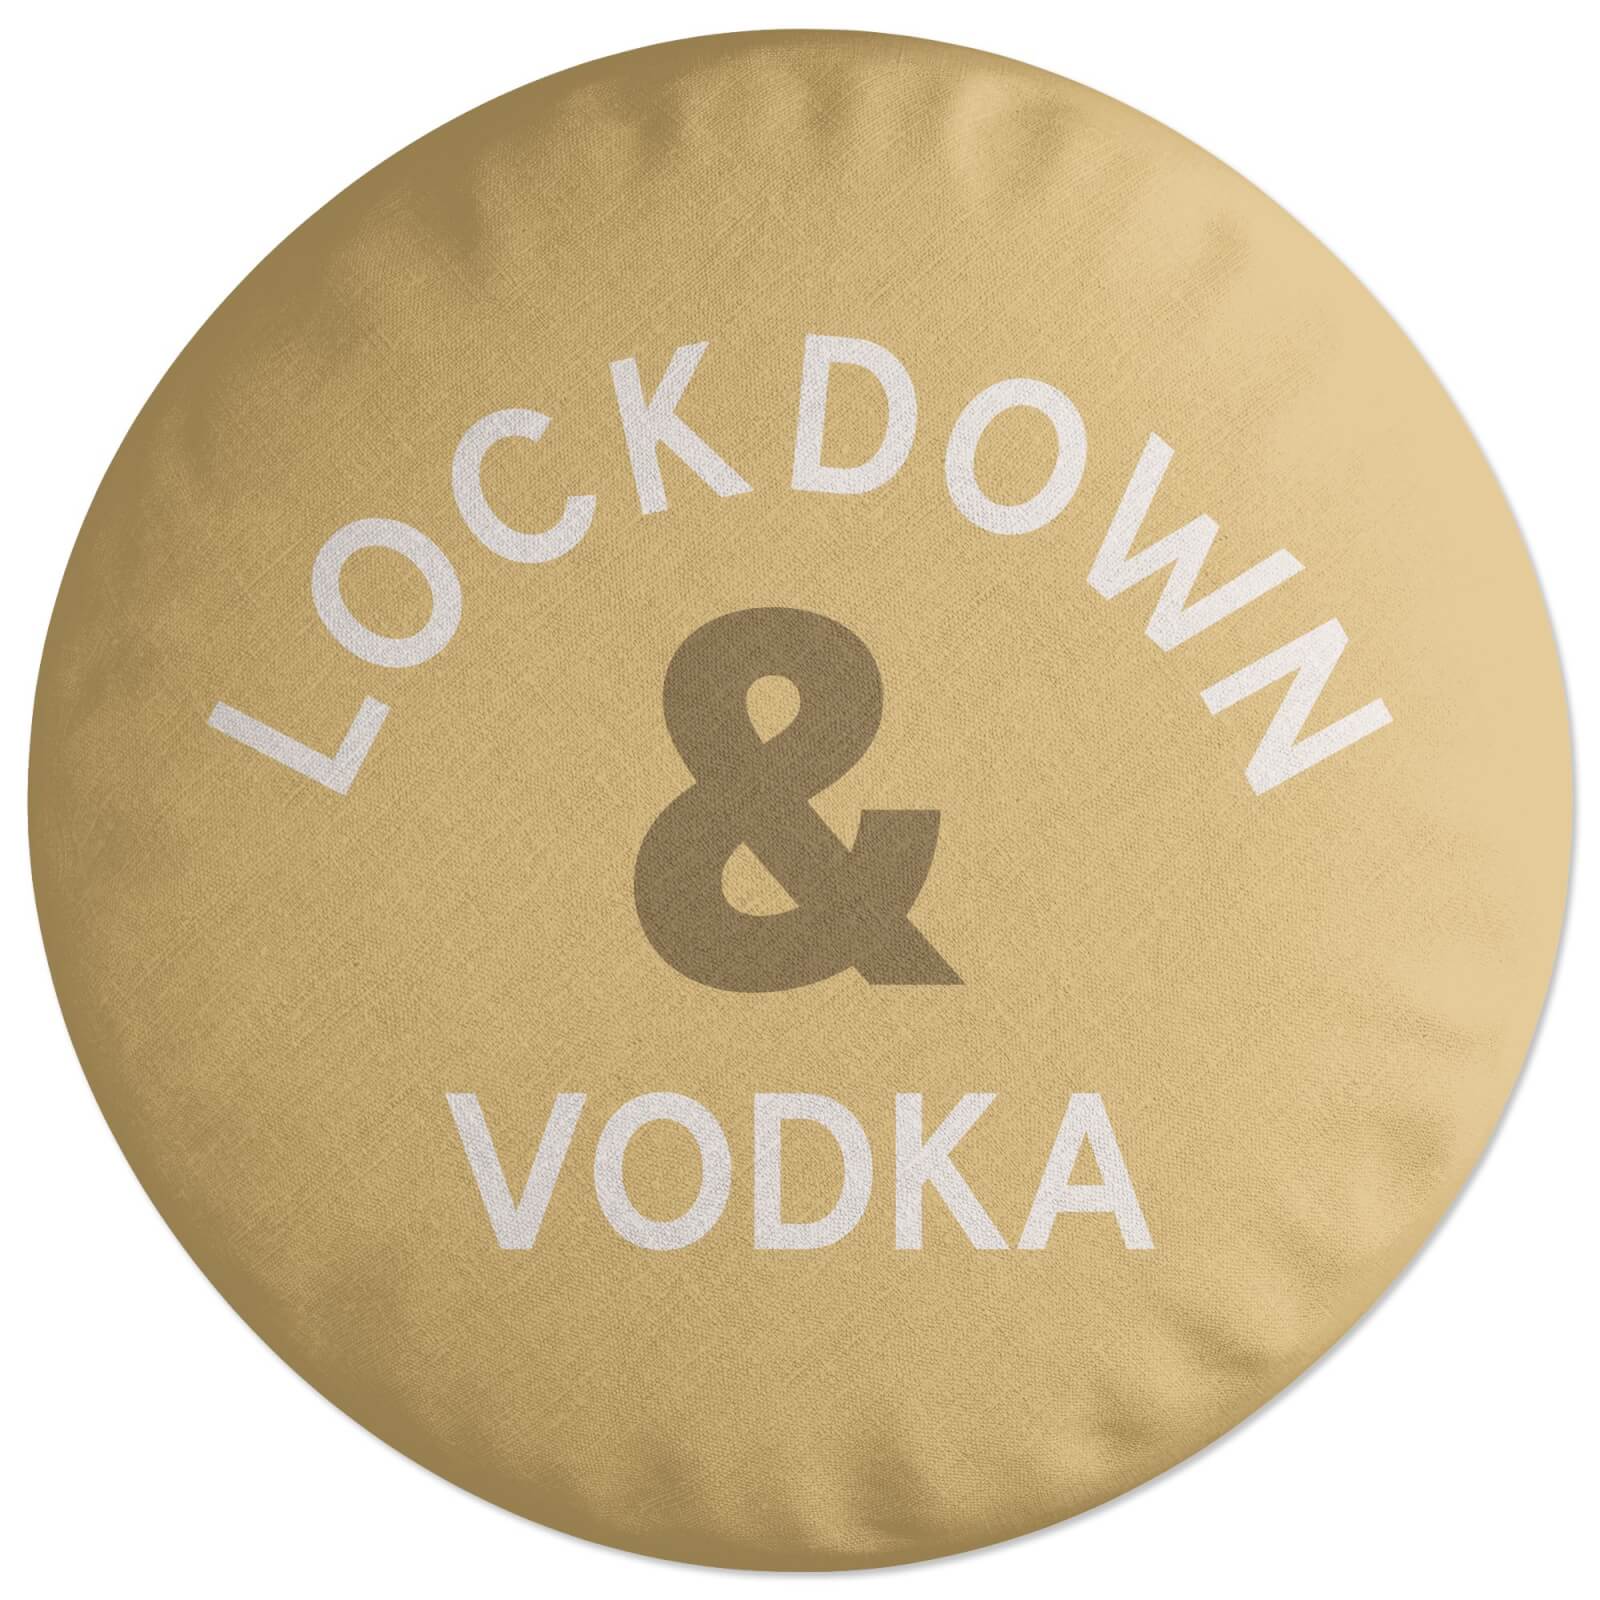 Lockdown & Vodka Round Cushion